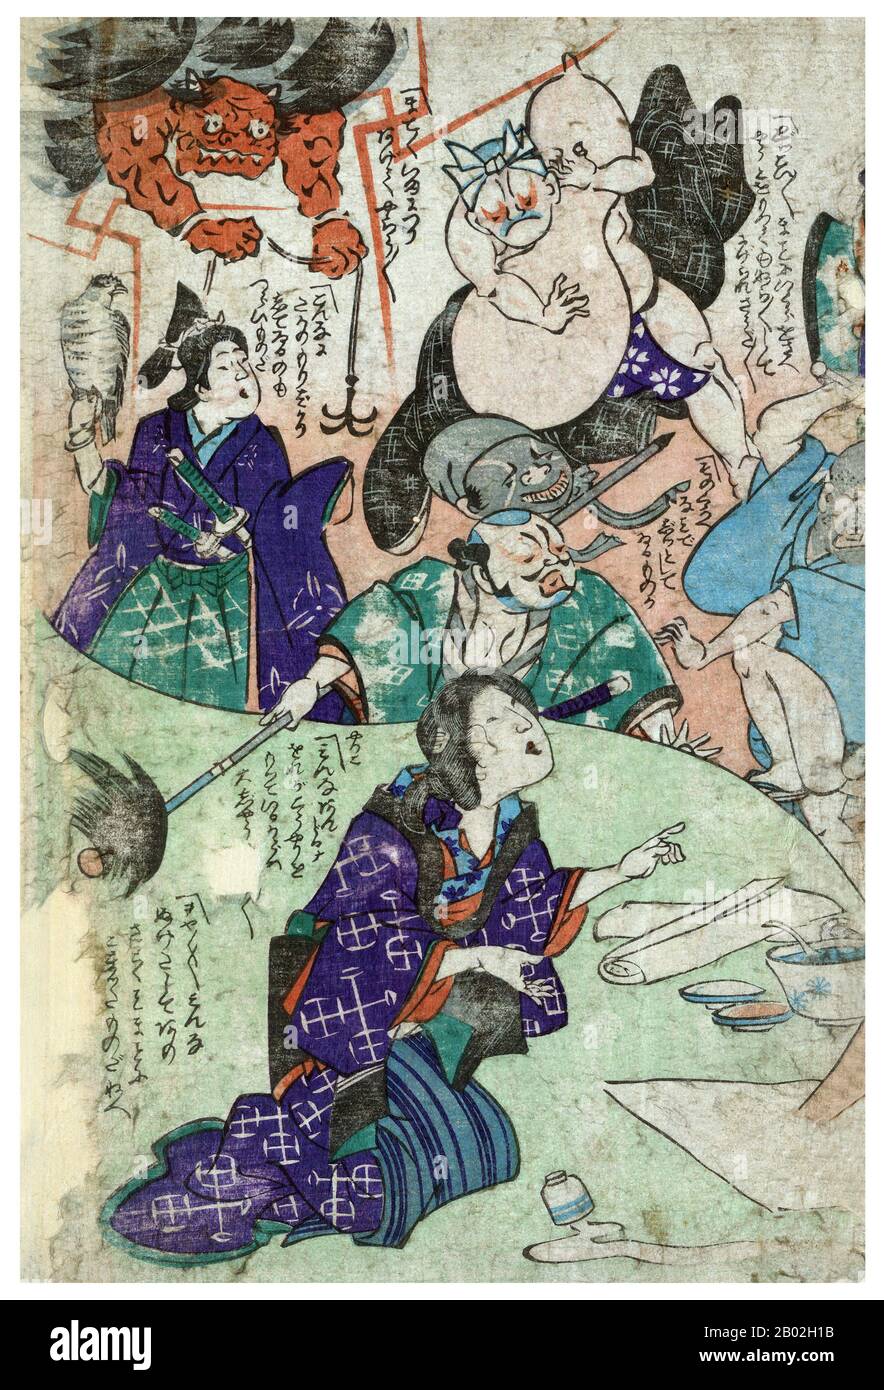 Ukiyo-e Holzblock-Druck, der einen Künstler im Vordergrund und verschiedene Charaktere im Hintergrund zeigt, darunter einen Dämon, der einen Anker hält, einen Samurai mit einem Falken, einen Mann mit langem Hecht und einen Ringer. Stockfoto